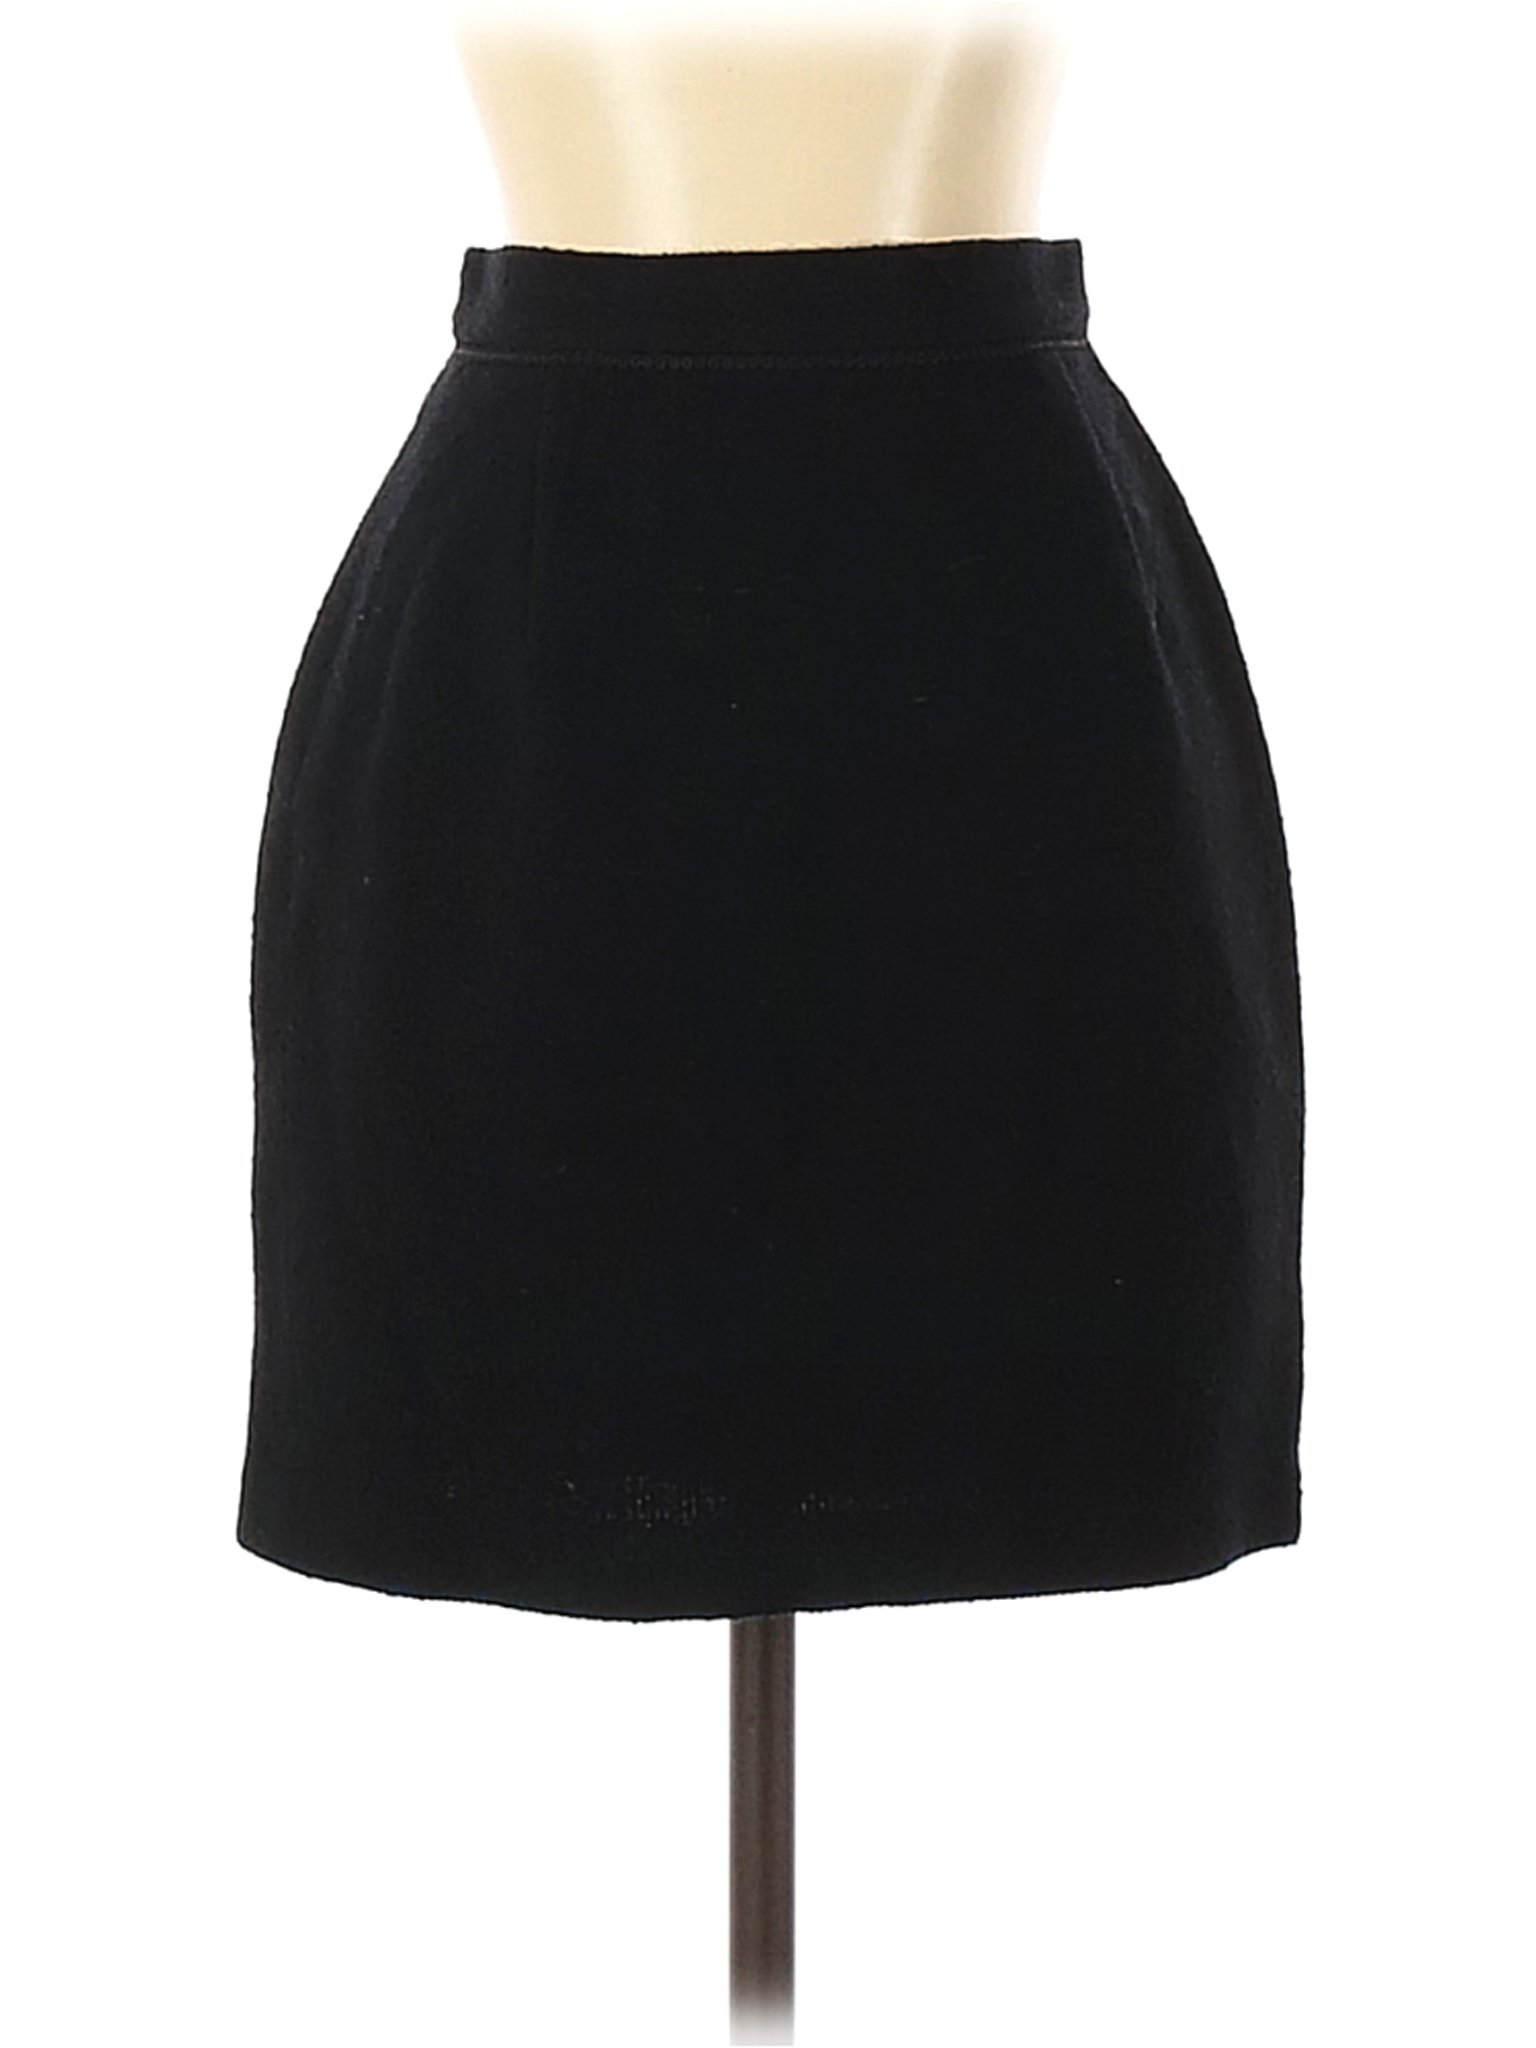 Jaeger Women Black Casual Skirt 4 | eBay